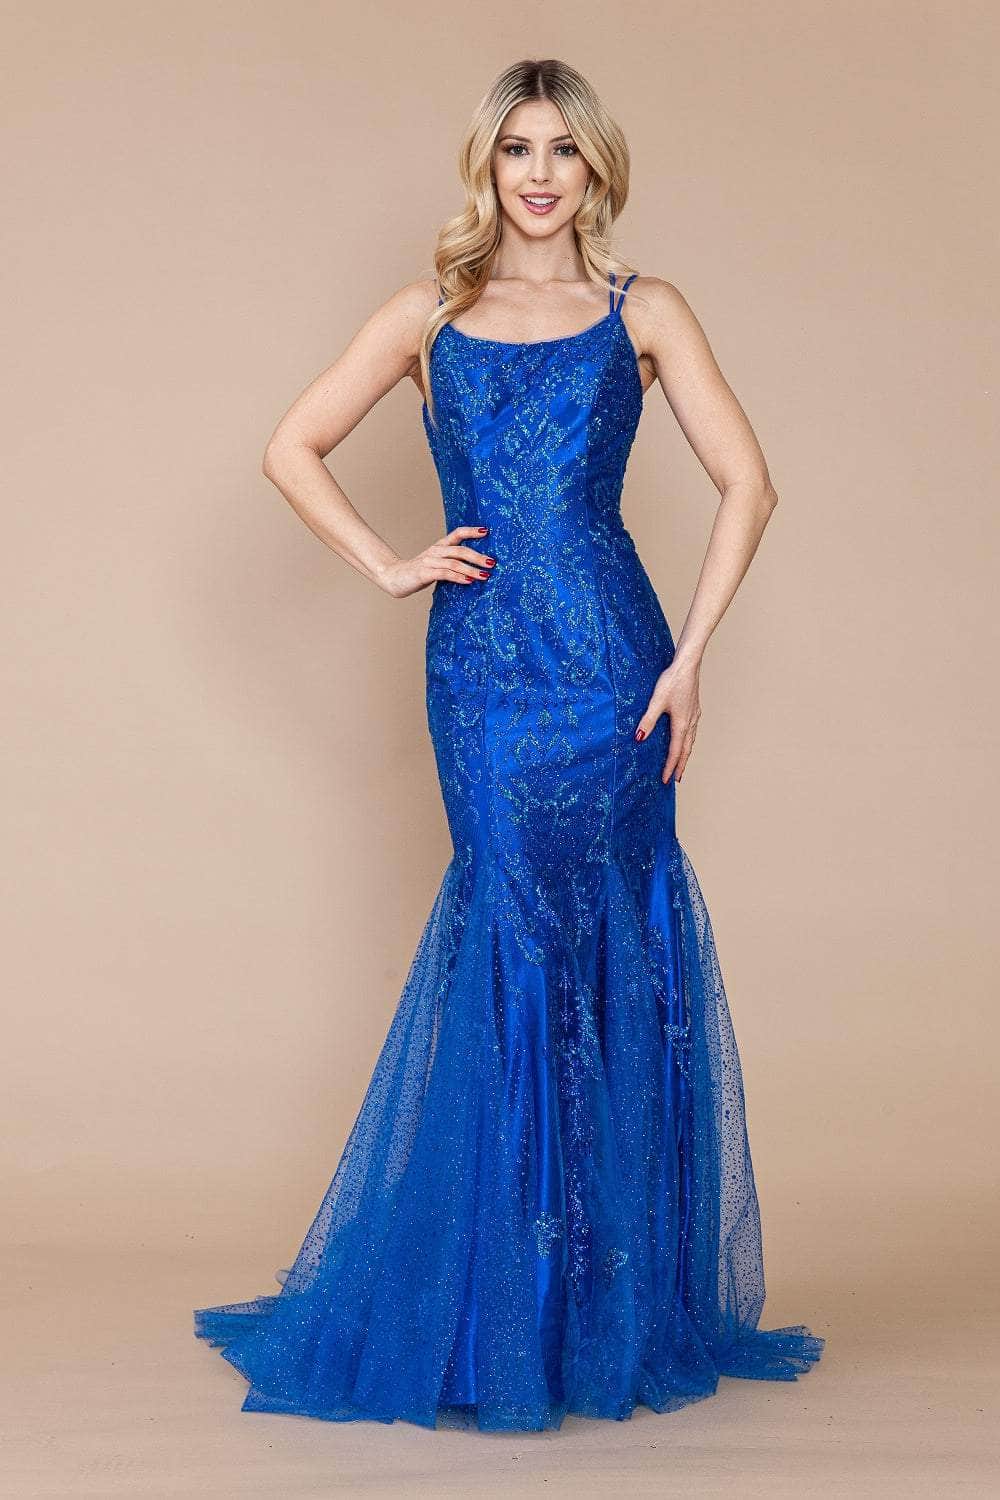 Poly USA 9306 - Dual Strap Mermaid Prom Dress
